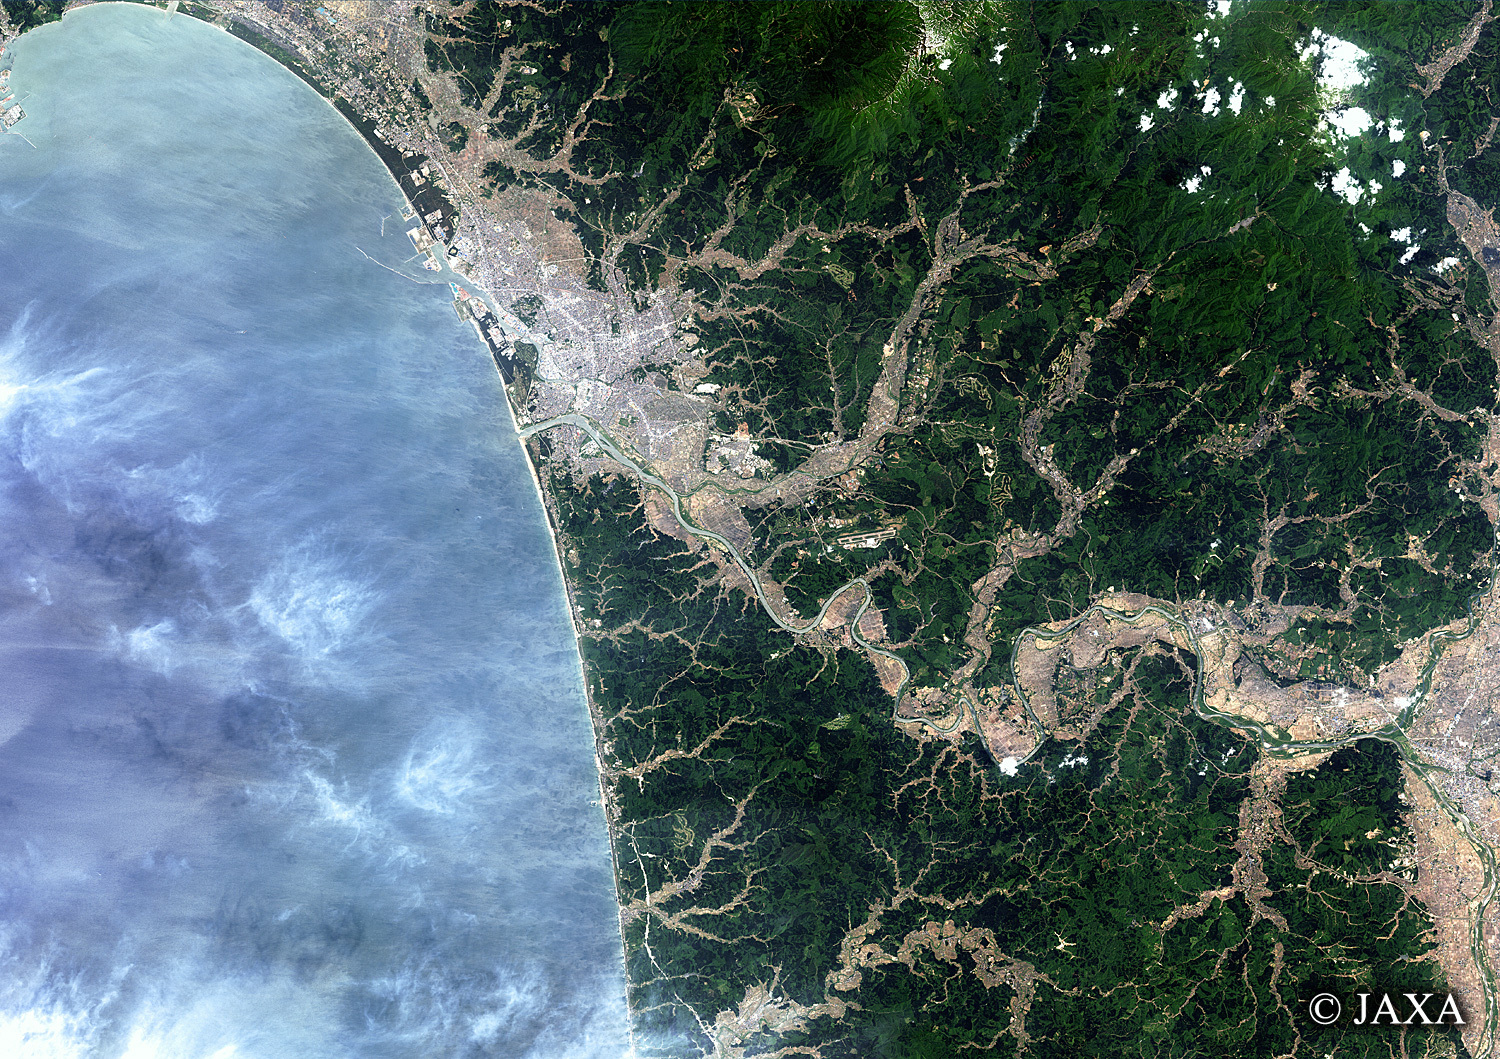 だいちから見た日本の都市 雄物川:衛星画像